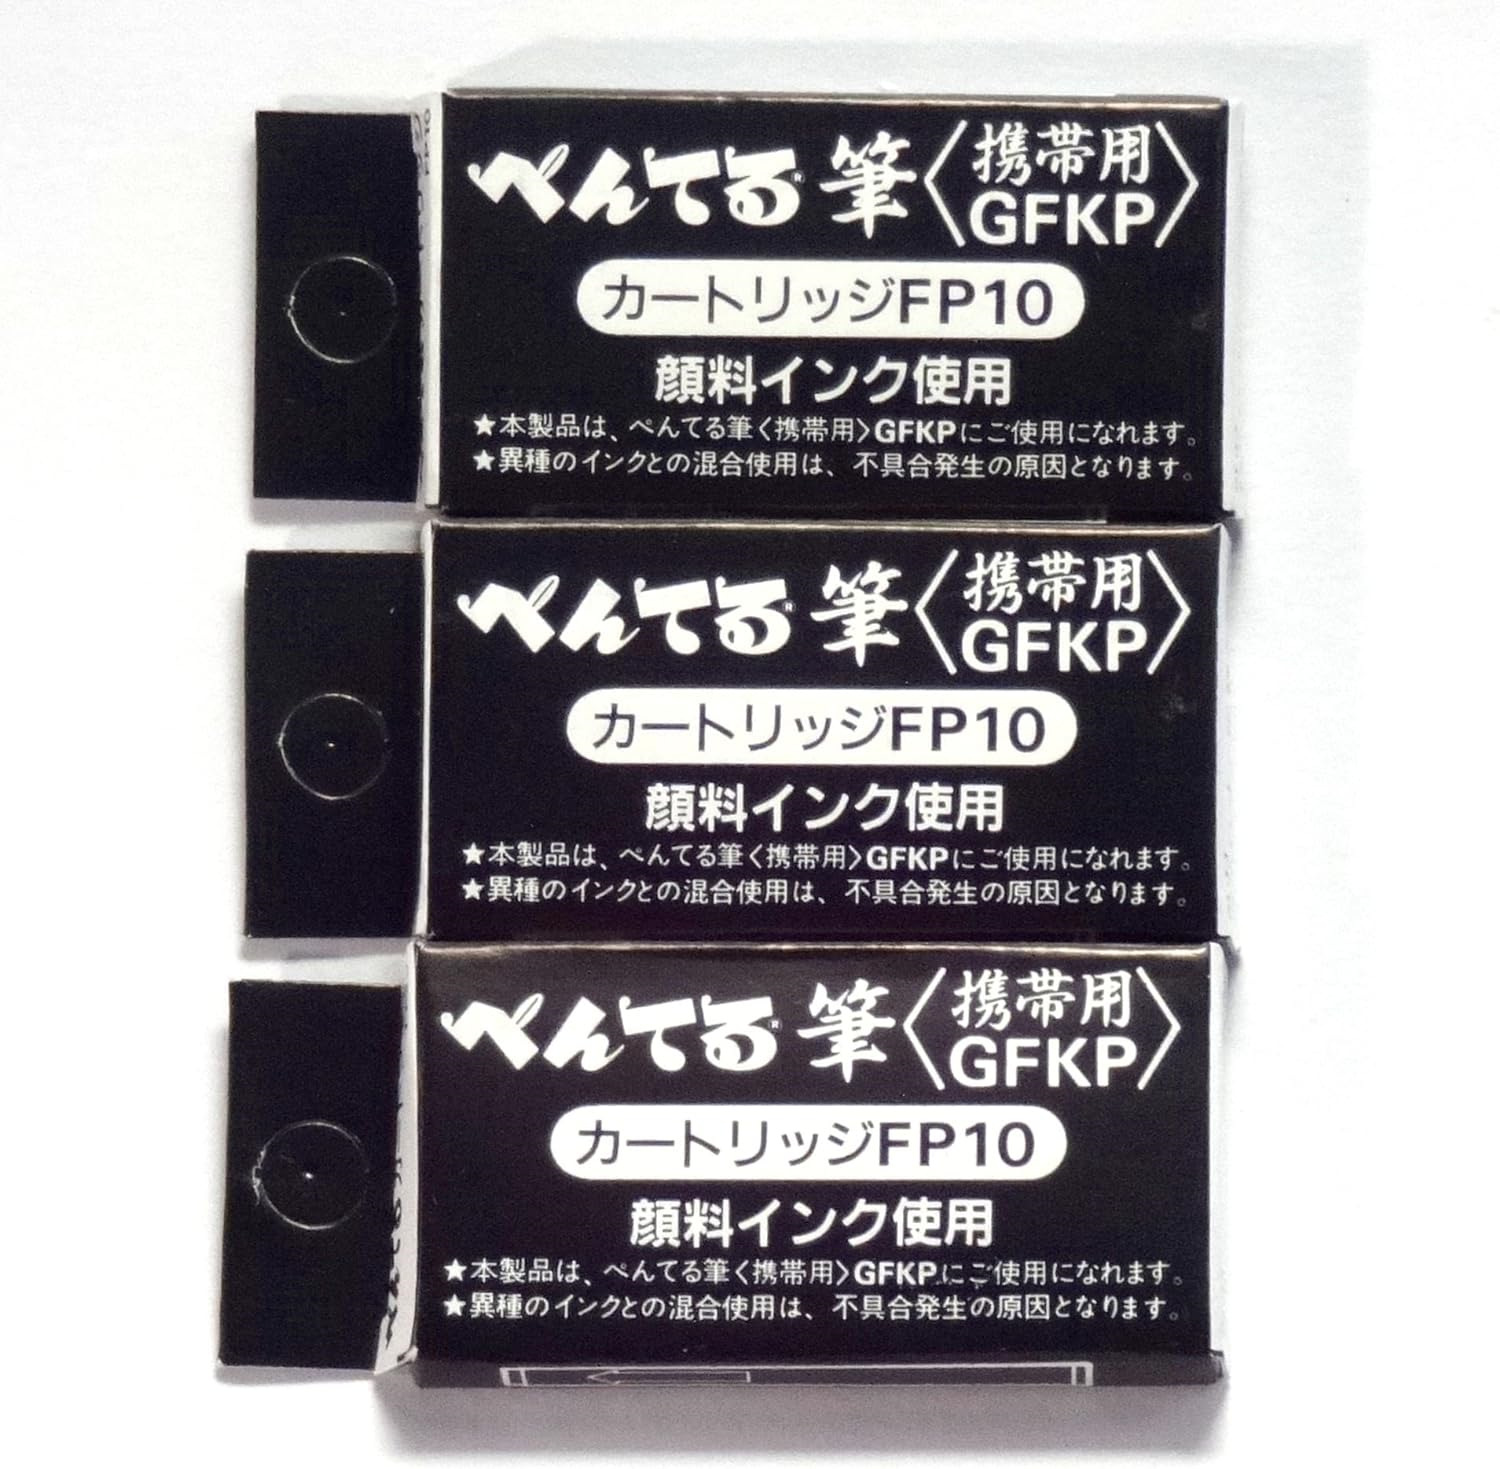 Pentel Pocket Fude Brush Pen Refills FP10-A, Black Ink, Ã— 3 Pack/total 12 Japan